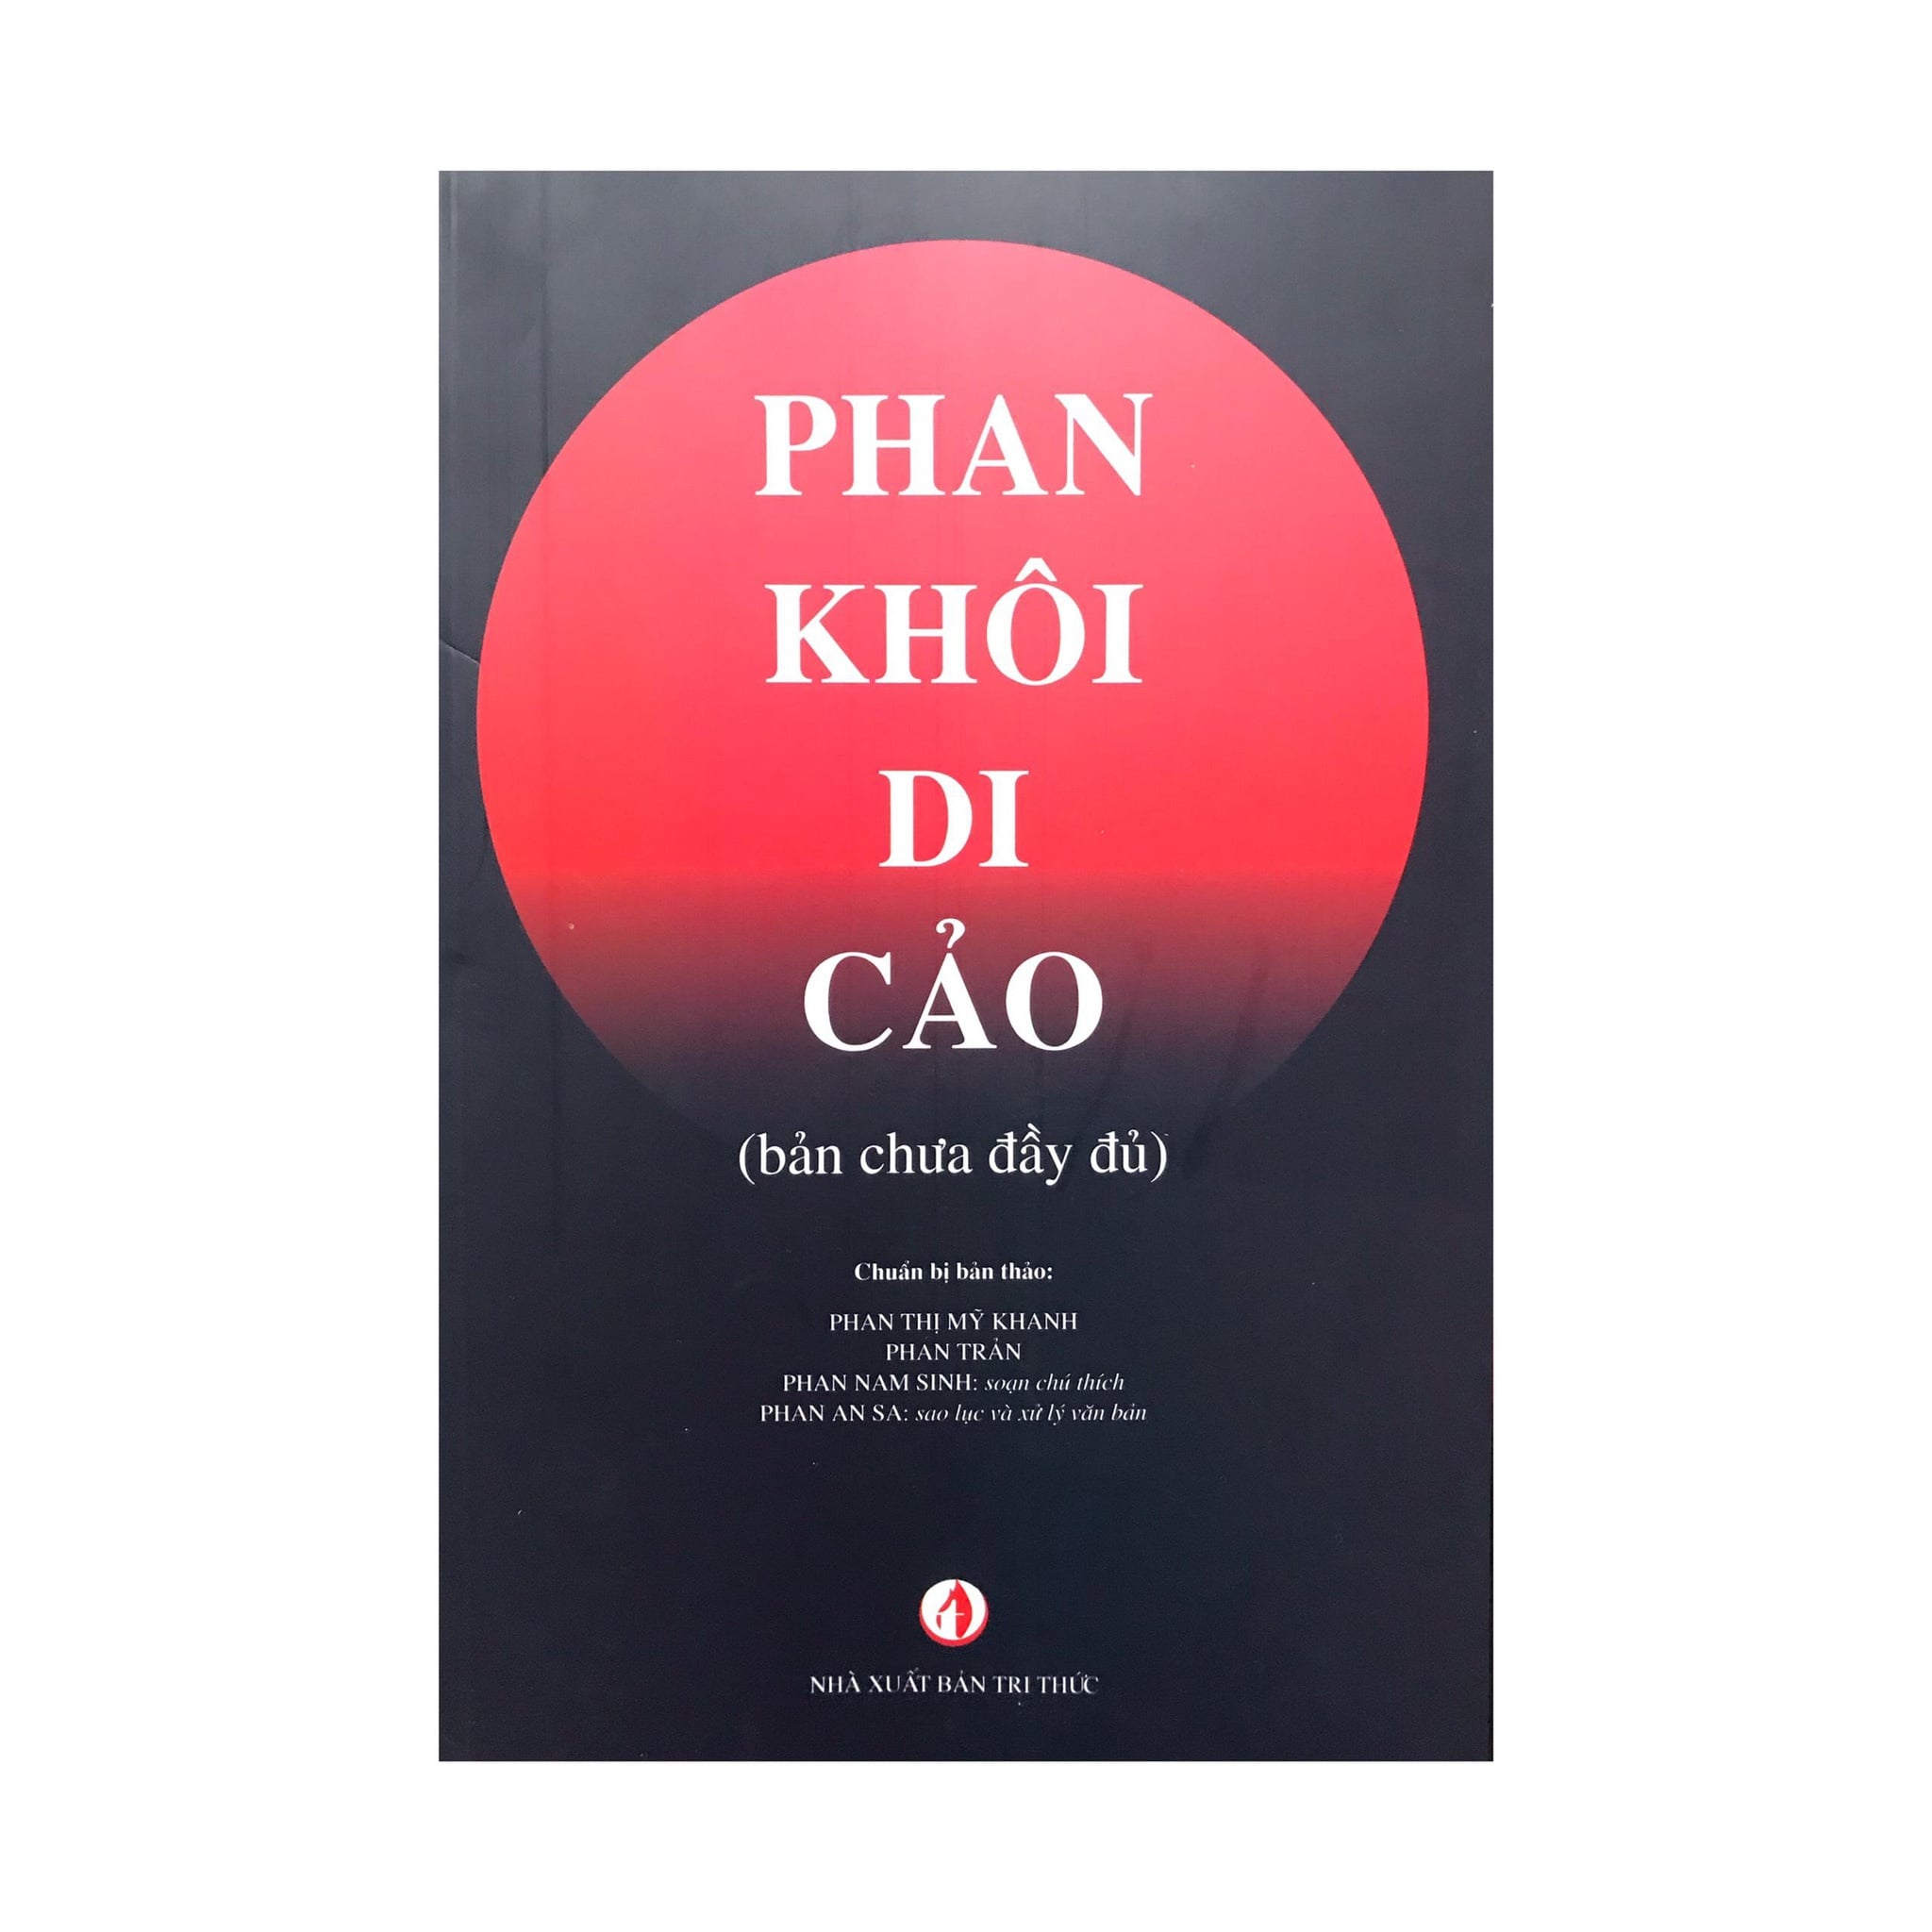 19b phan khoi 8807 min - Xuất bản di cảo của học giả Phan Khôi